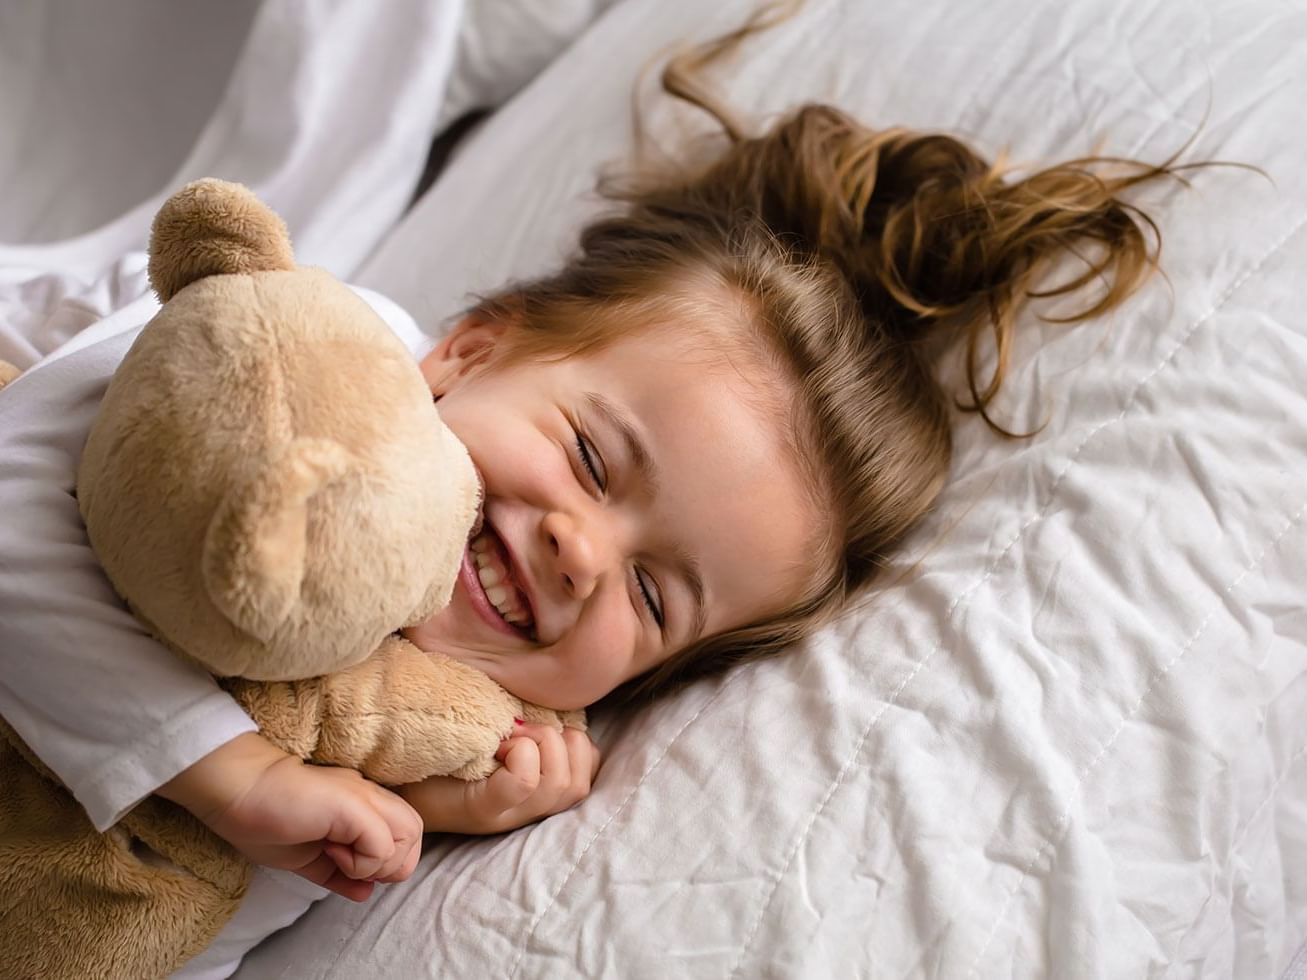 A kid cuddling with a stuffed teddy bear on a bed